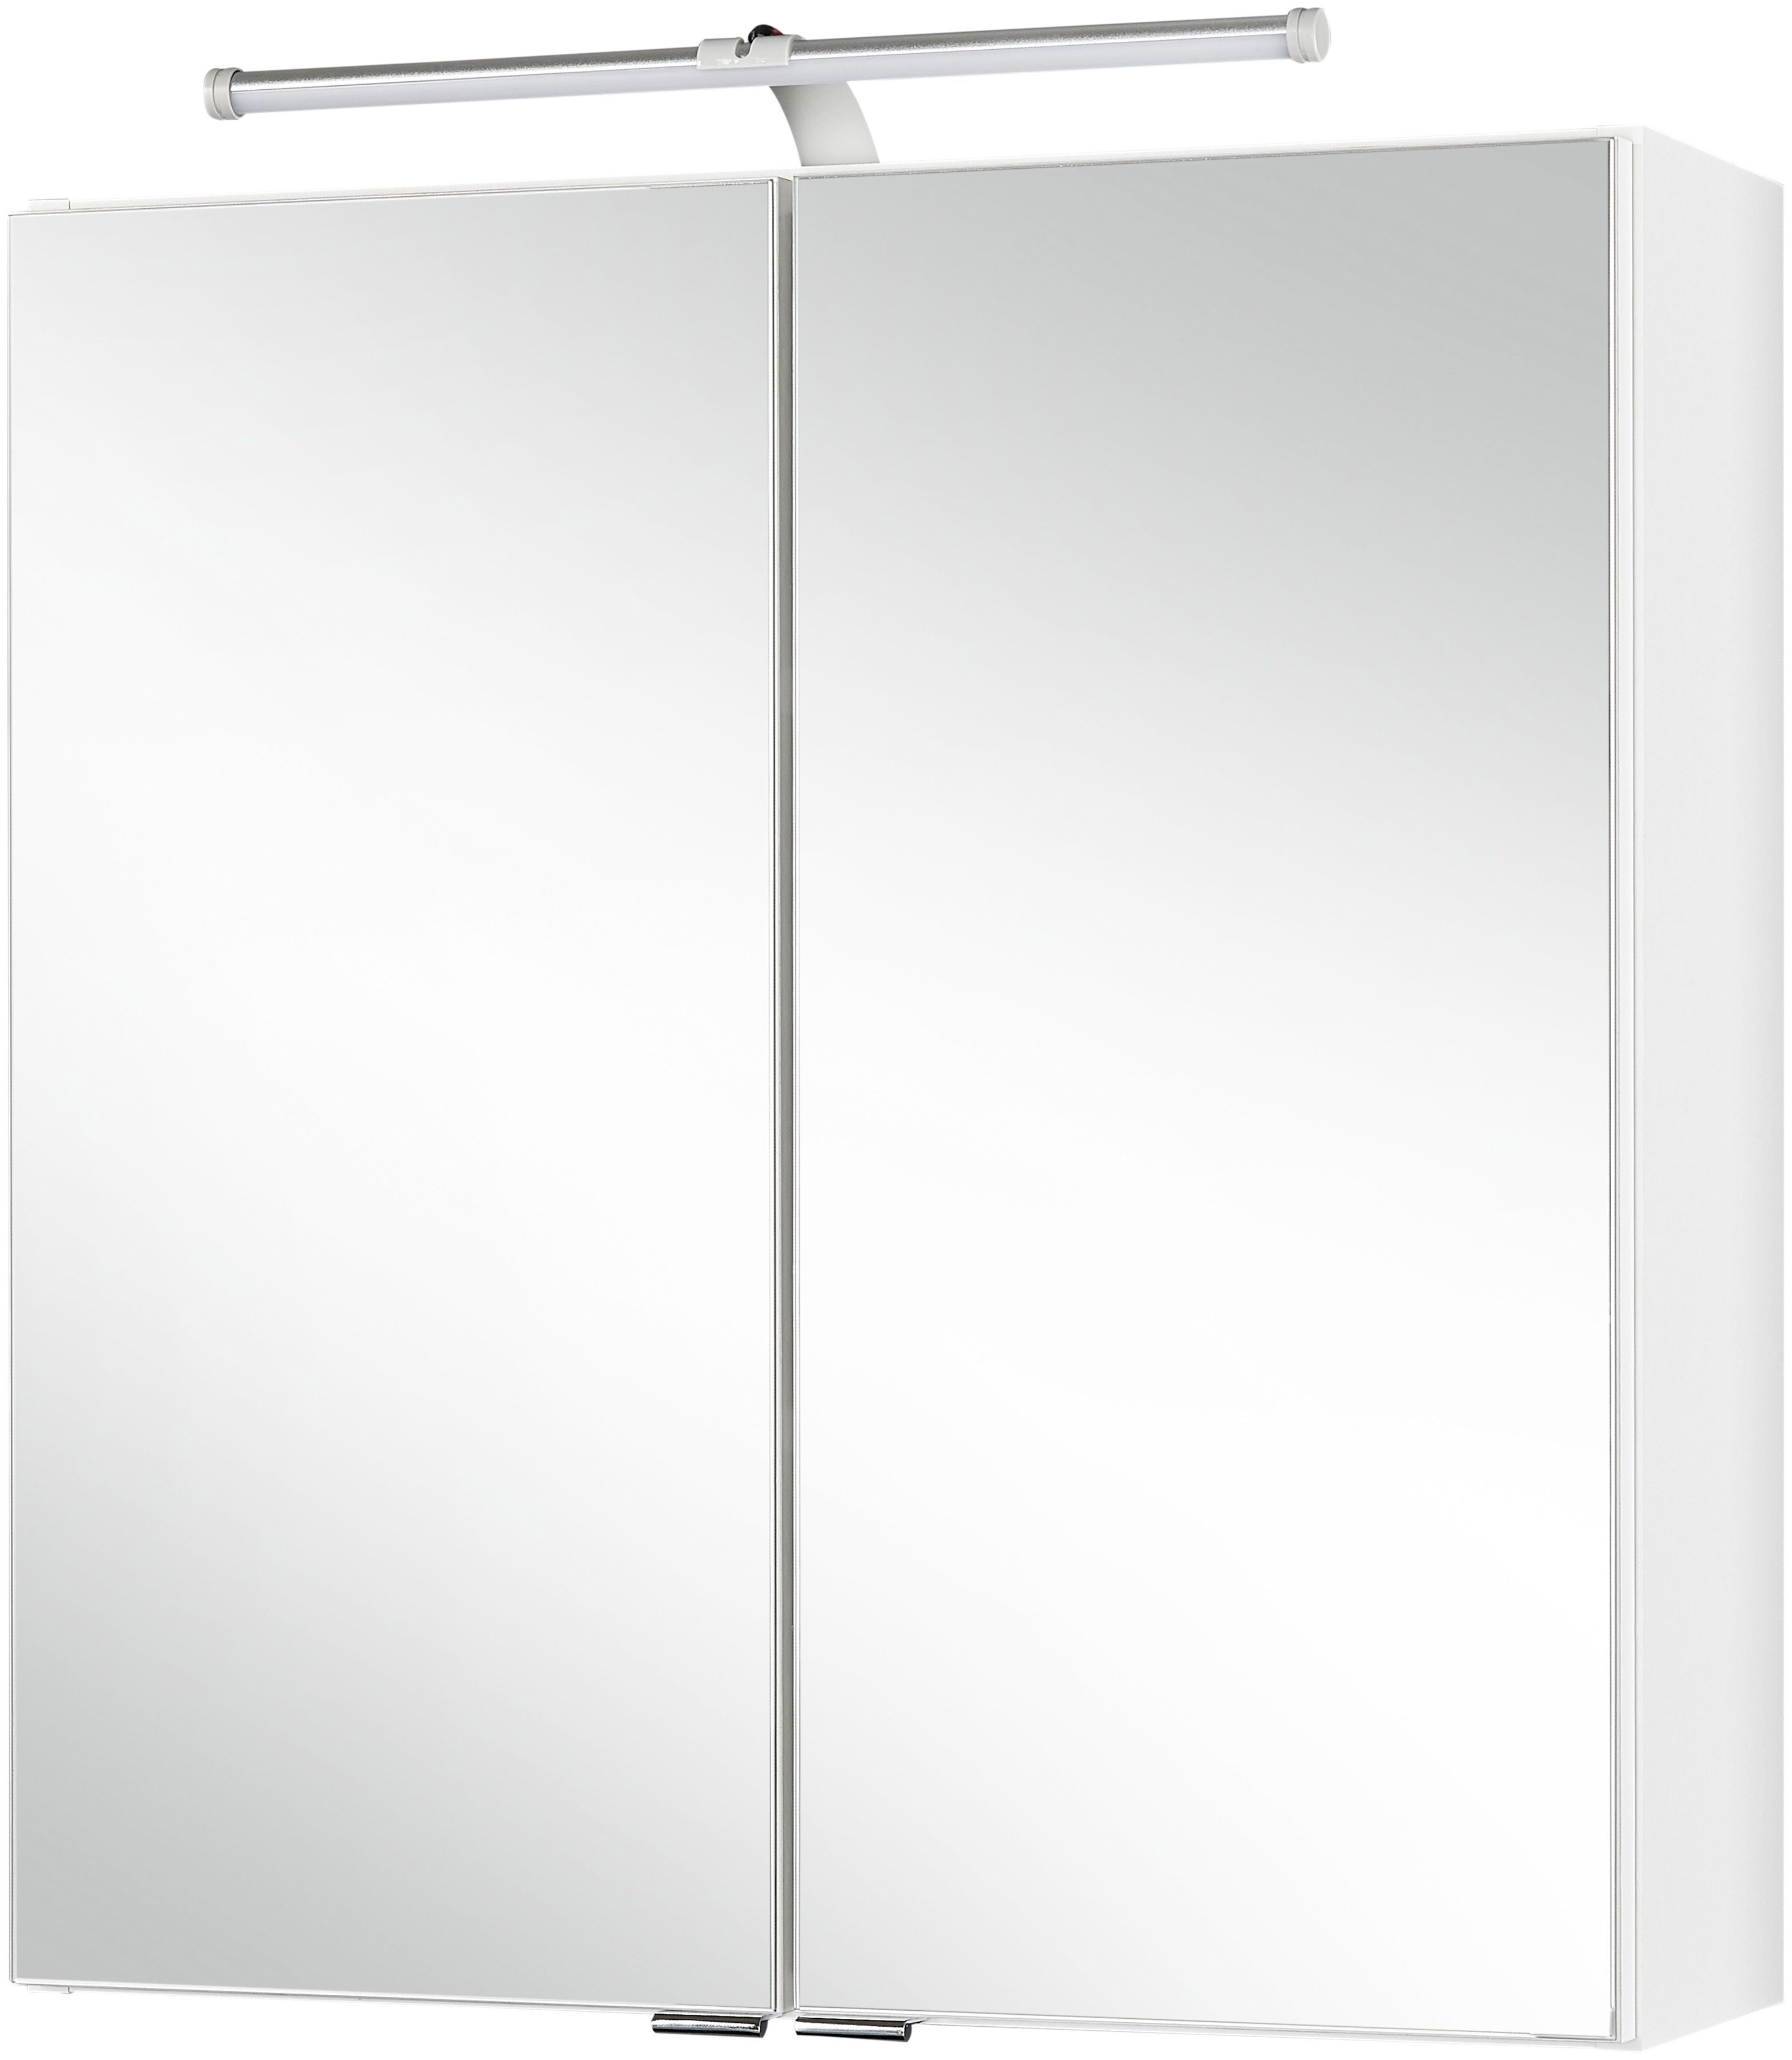 Held Möbel Badezimmer Spiegelschränke online kaufen | OTTO